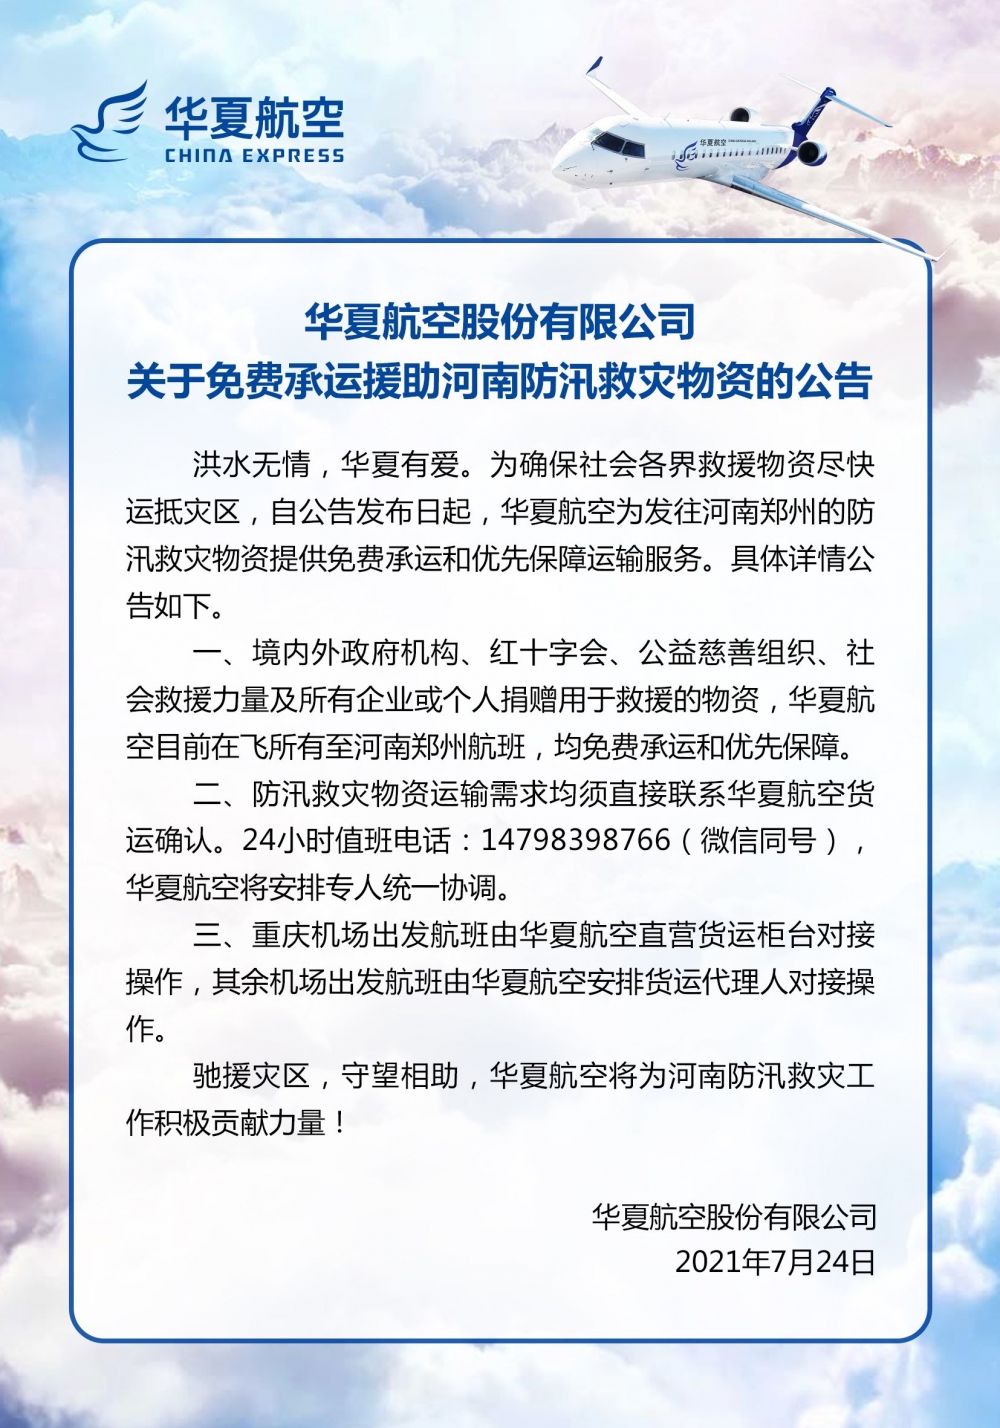 河南|华夏航空免费承运援助河南防汛救灾物资